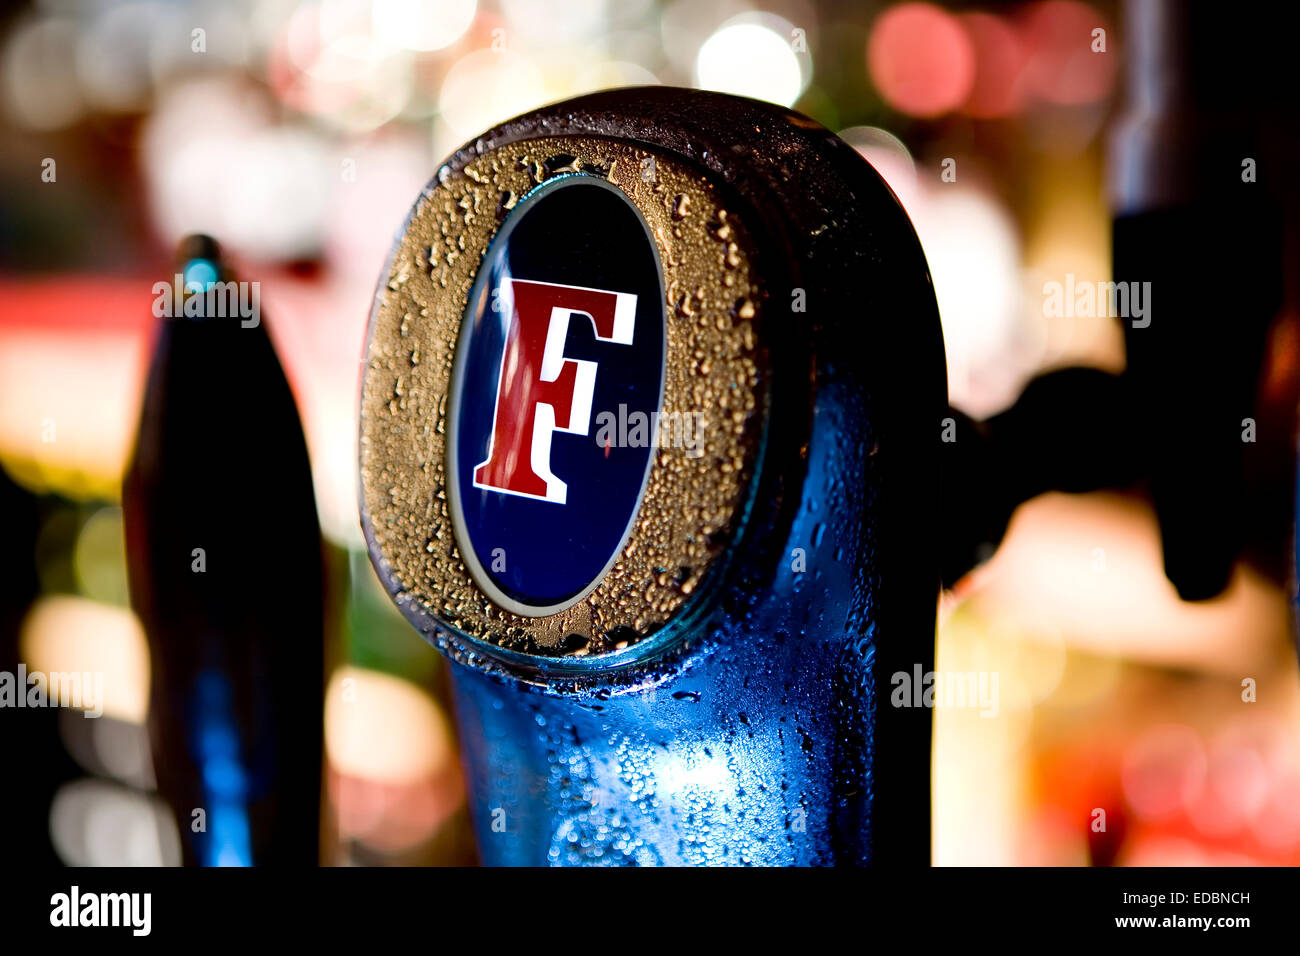 Anschauliches Bild von Fosters Bier. Stockfoto